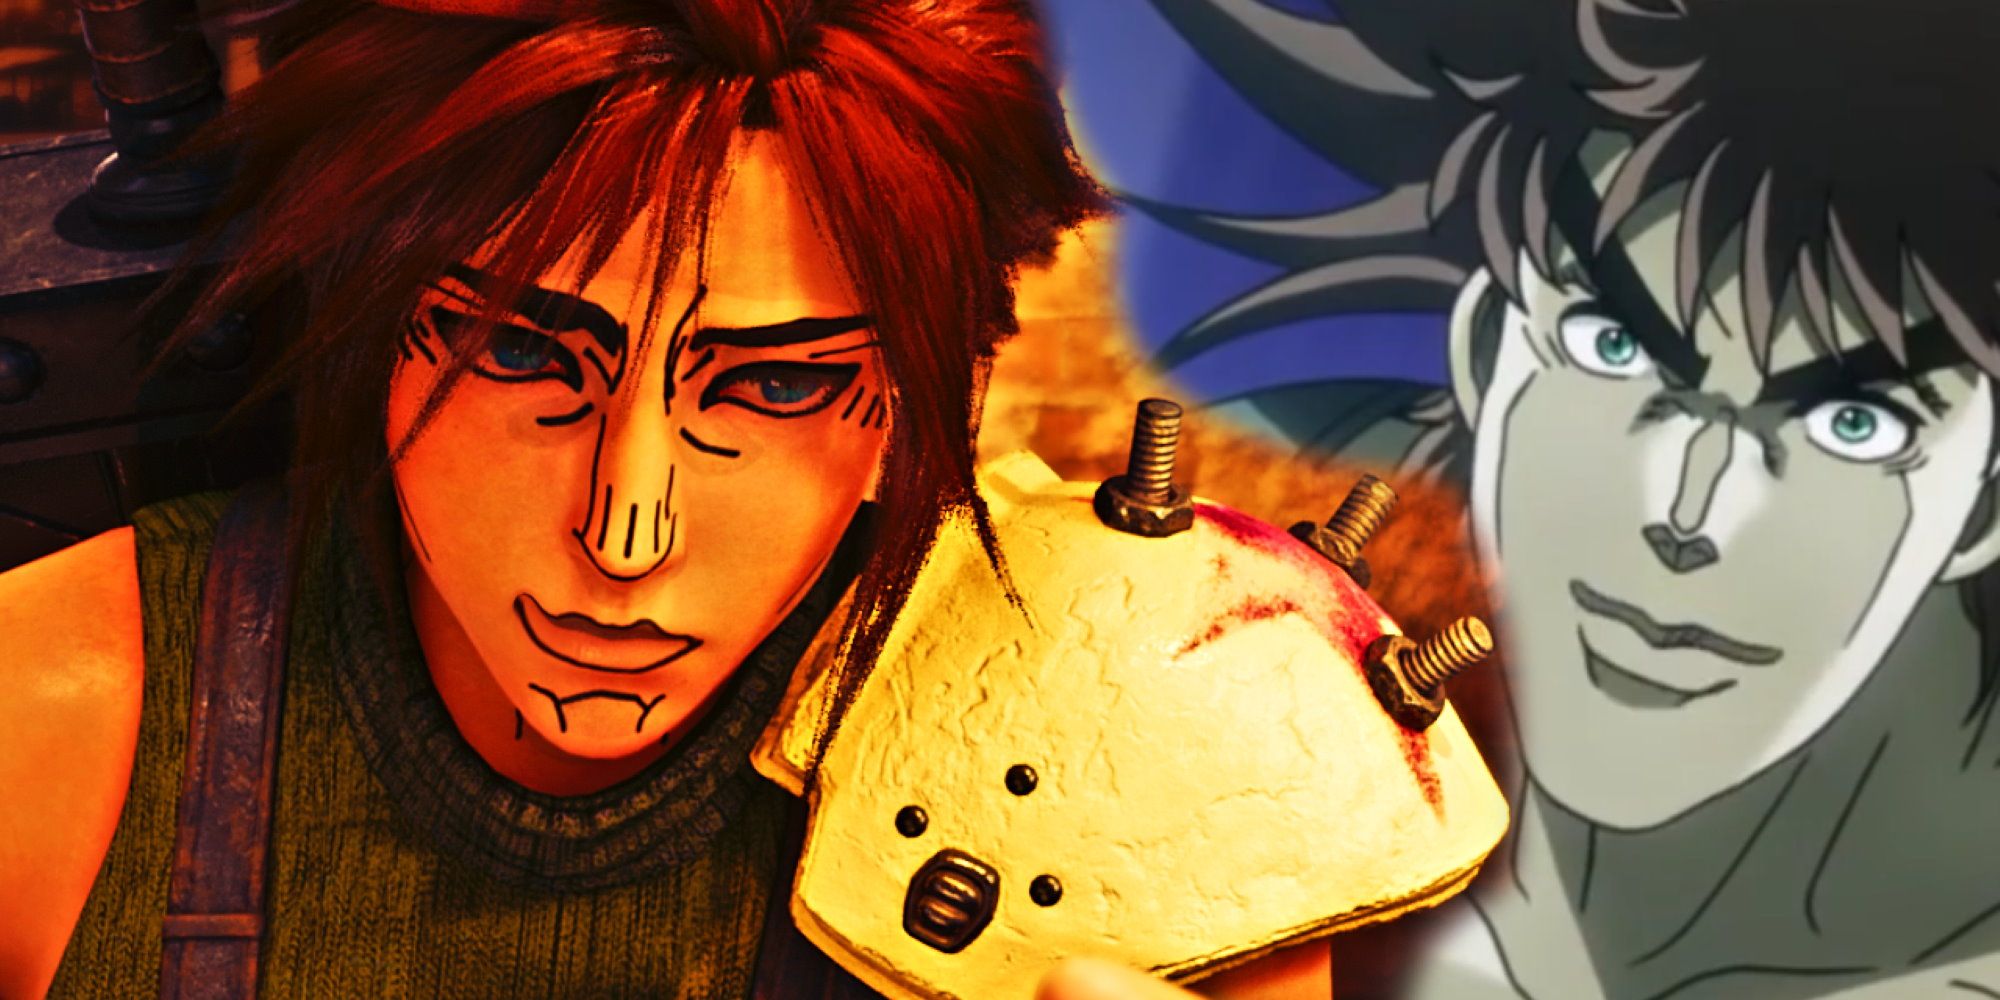 Final Fantasy 7 Remake Modder Releases 'Ronald McDonald' Mod